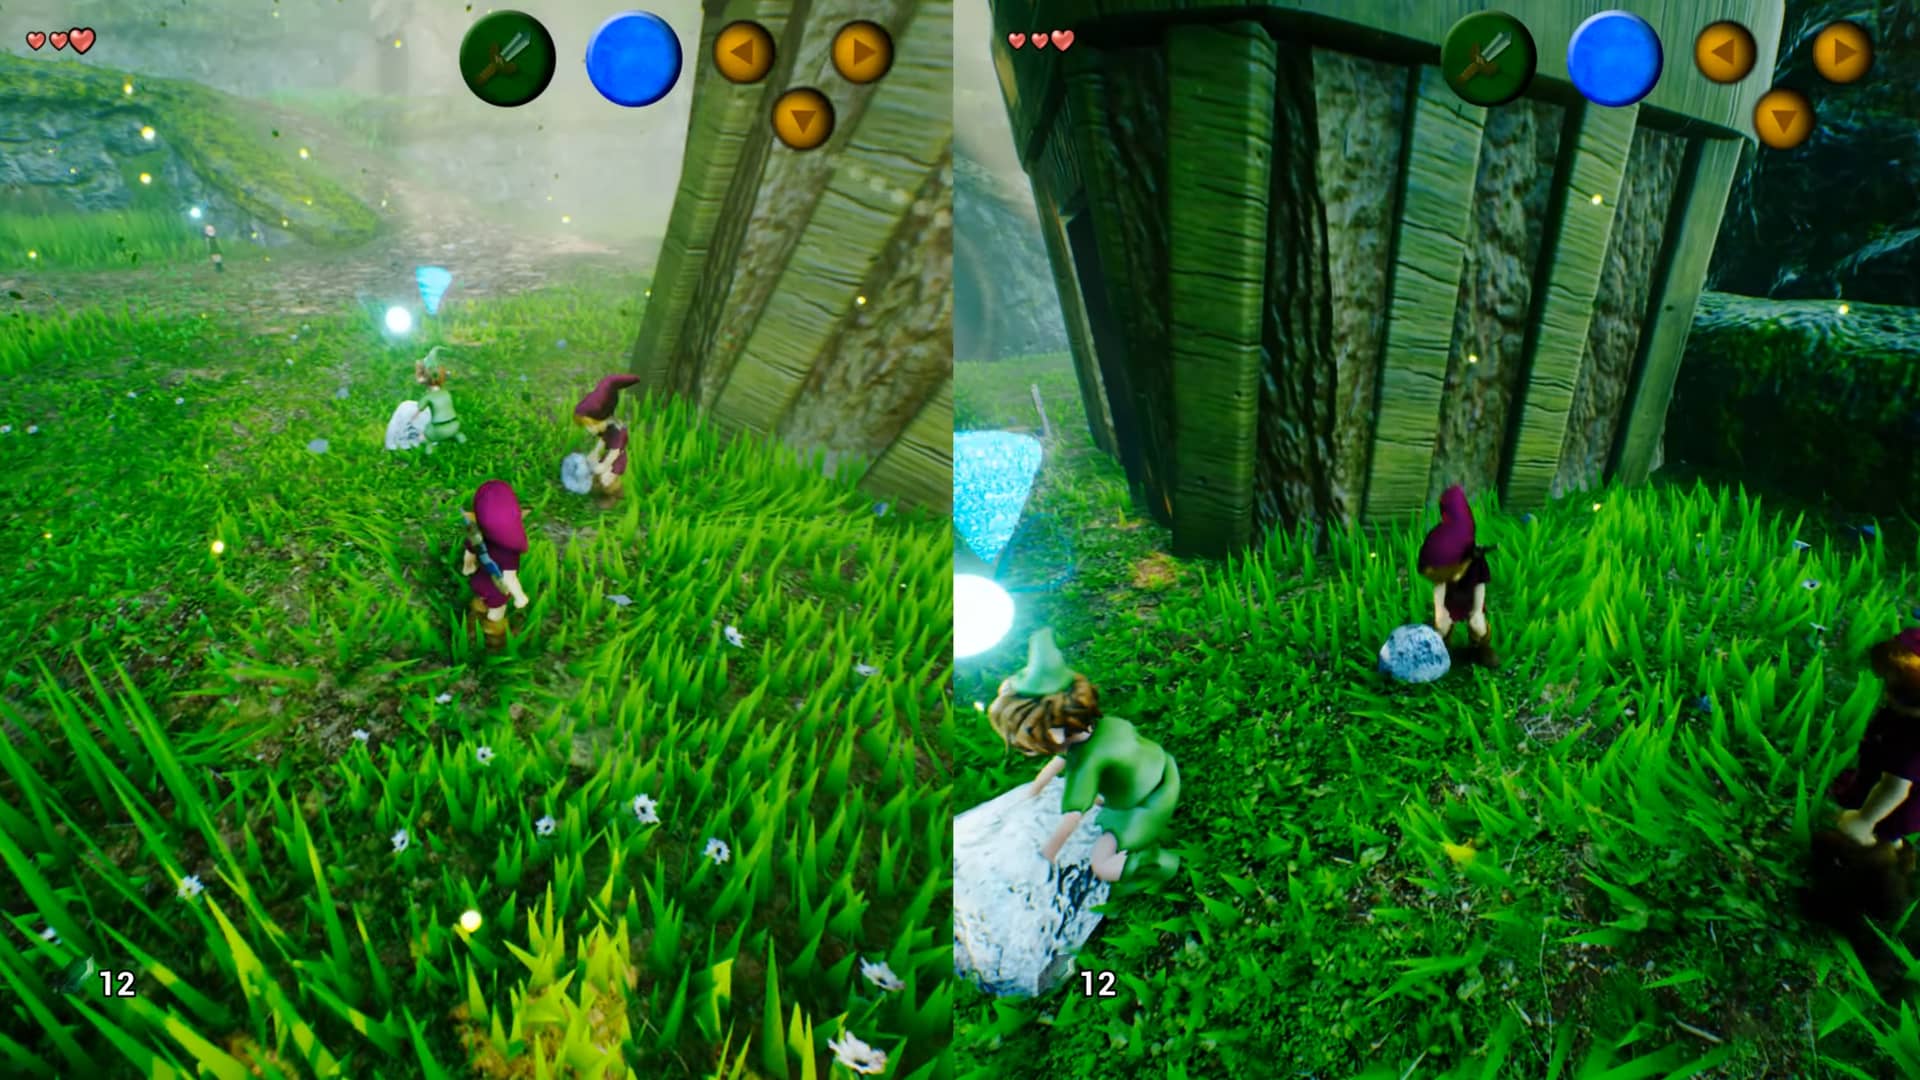 Zelda: Ocarina of Time ONLINE  Co-Op Multiplayer MOD! - H4G 